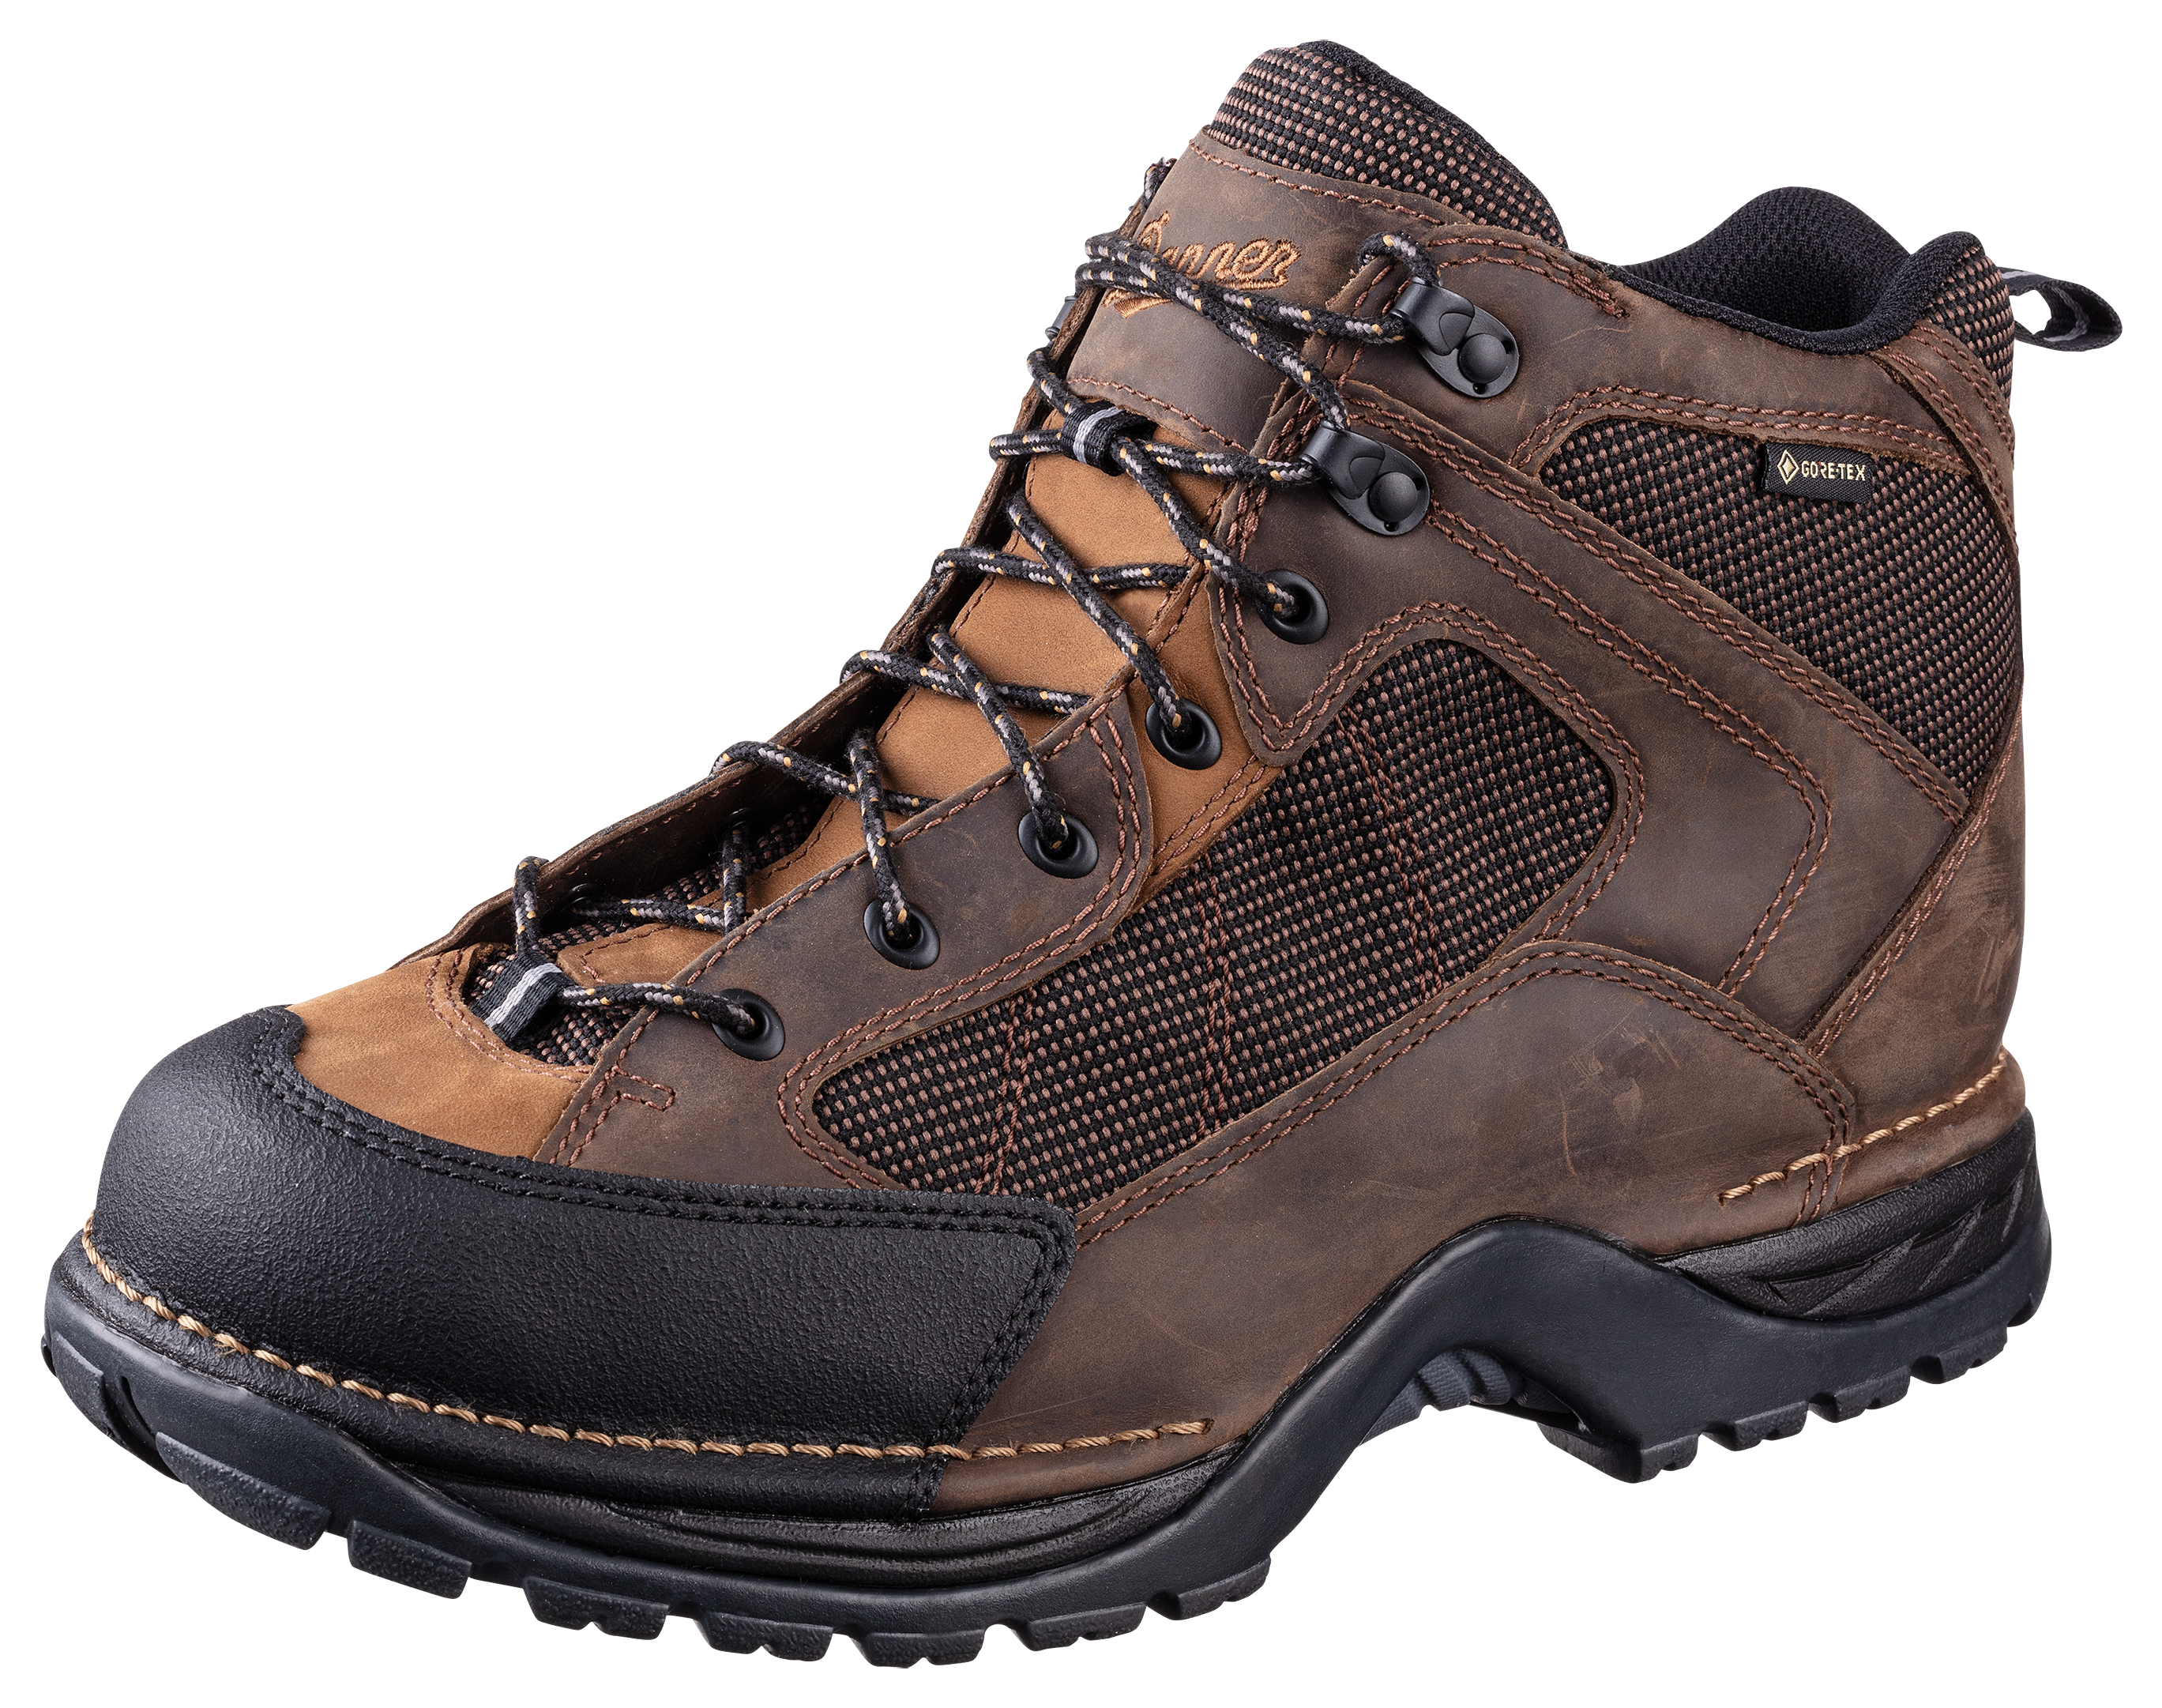 Danner Radical 452 GORE-TEX Hiking Boots for Men - Dark Brown - 14M